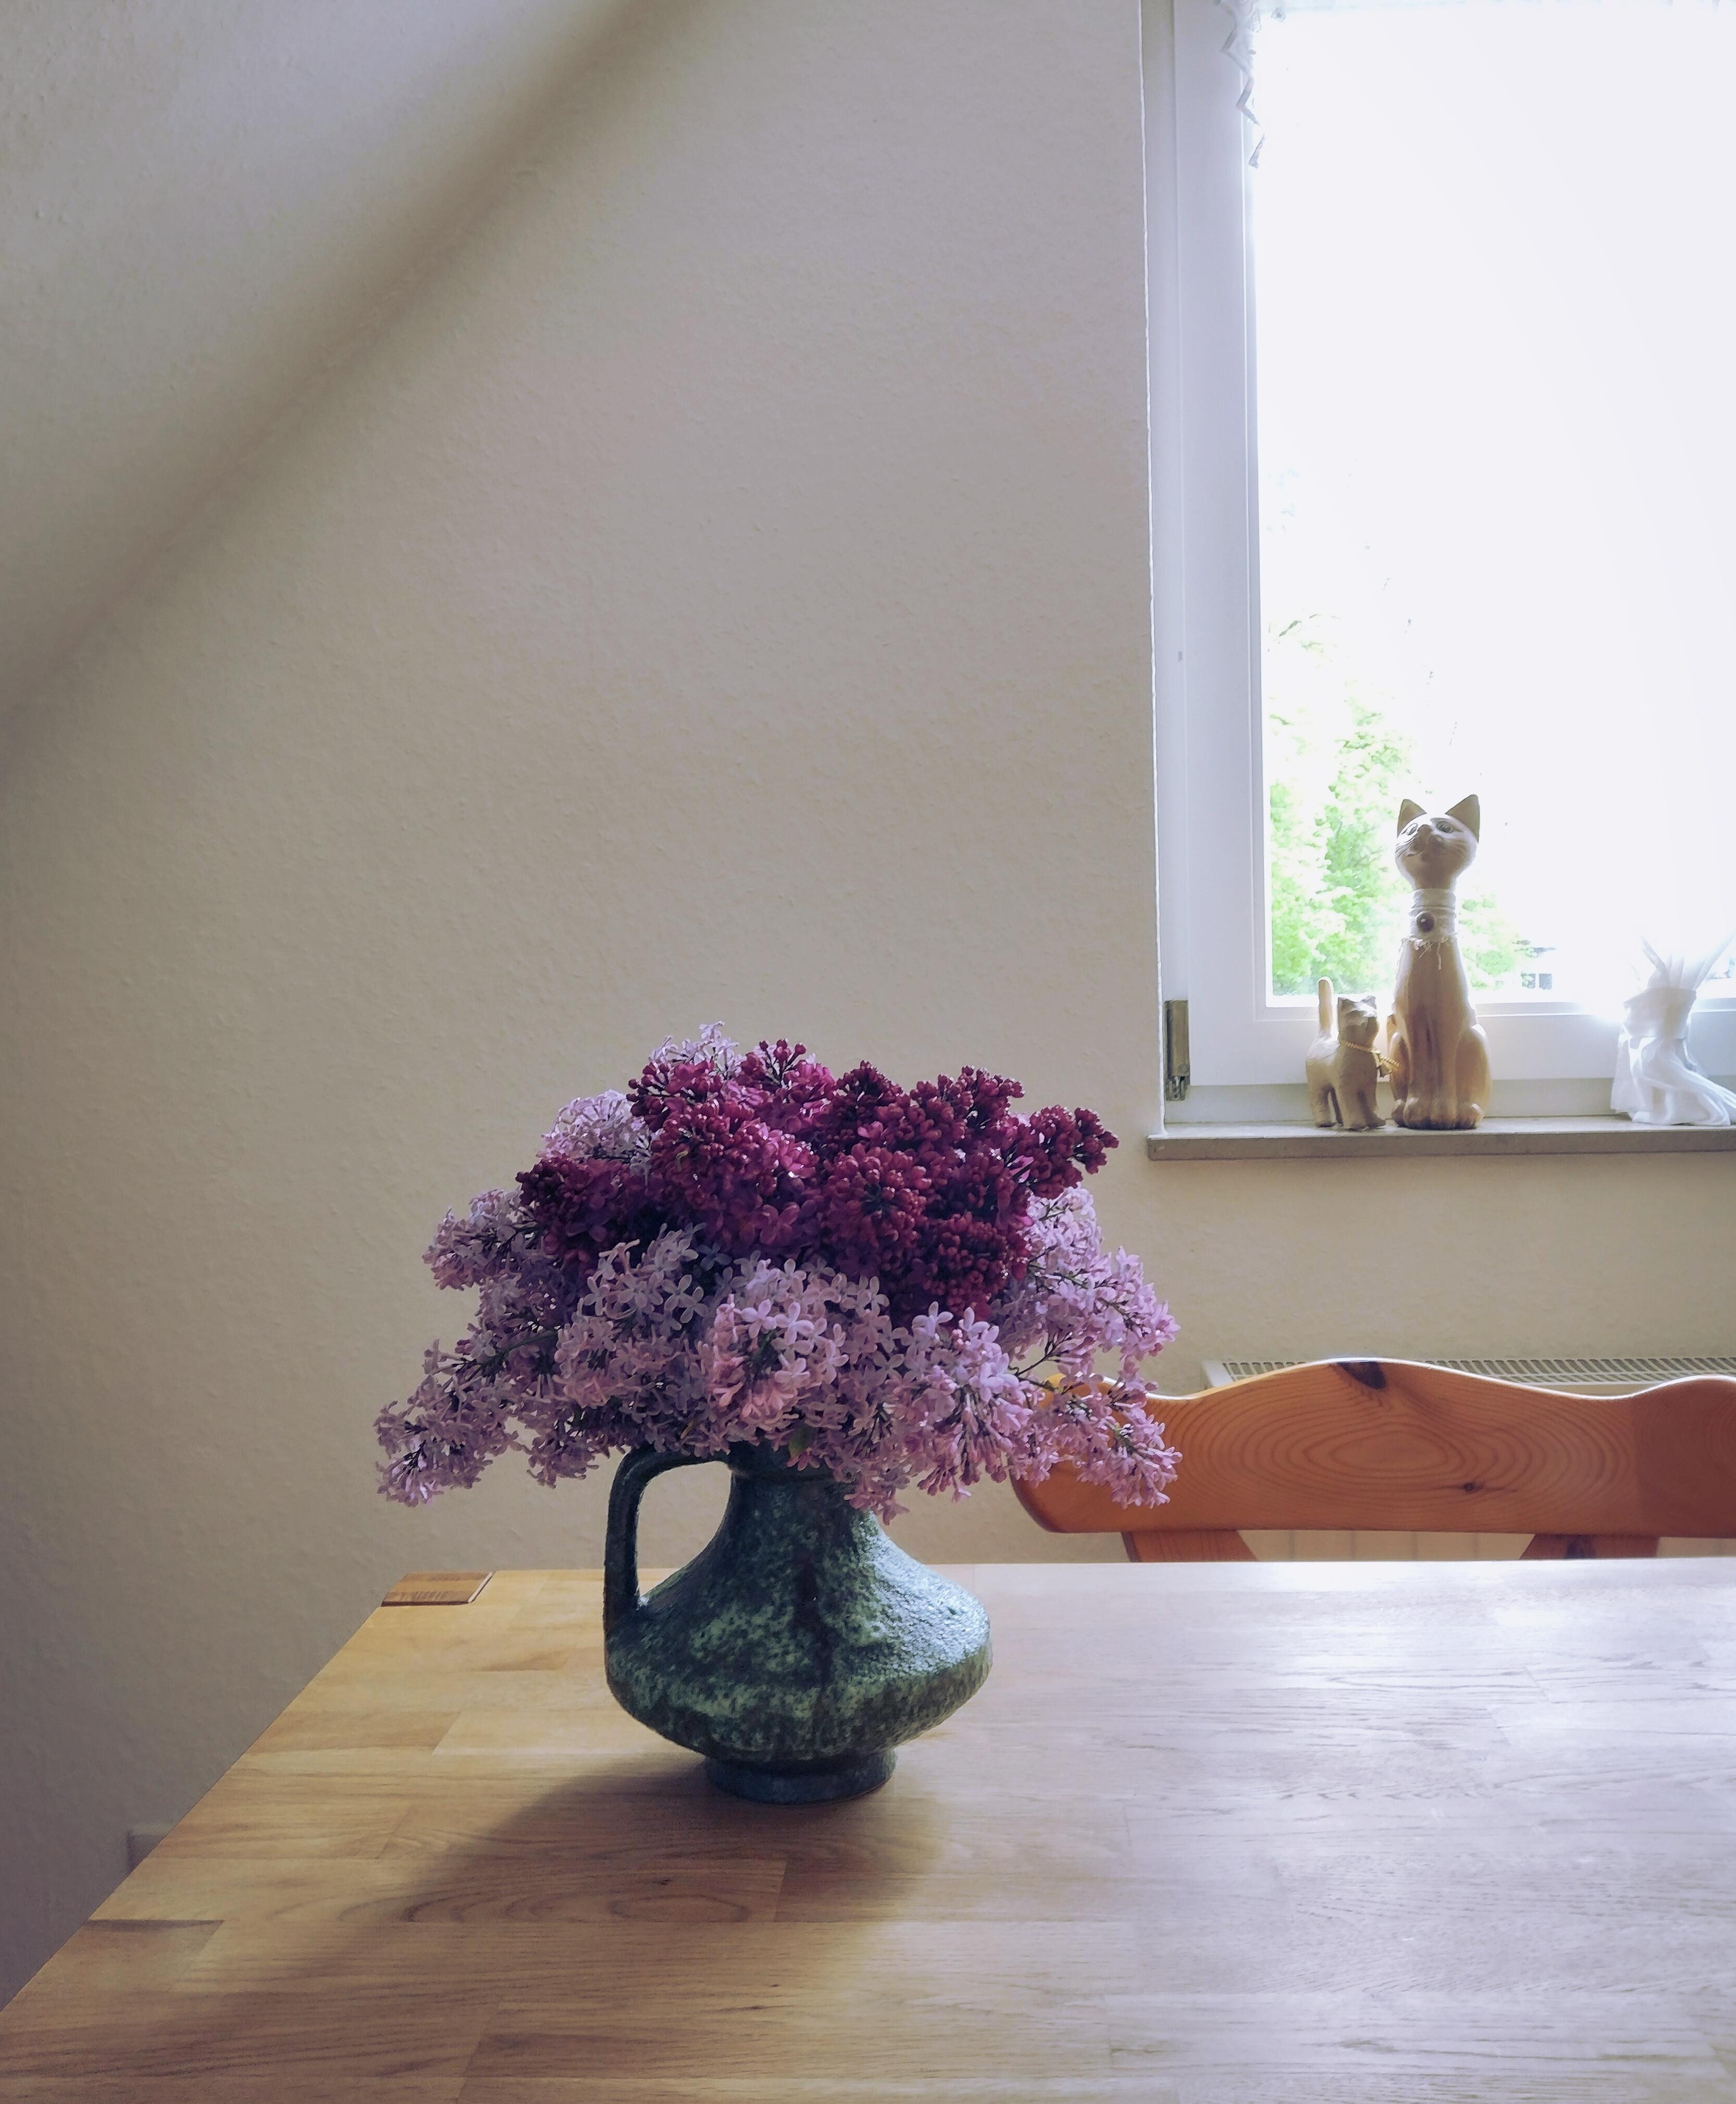 💜💜💜
#frischeblumen #blumenliebe #flieder #lila #vintagevase #keramikvase #esstisch